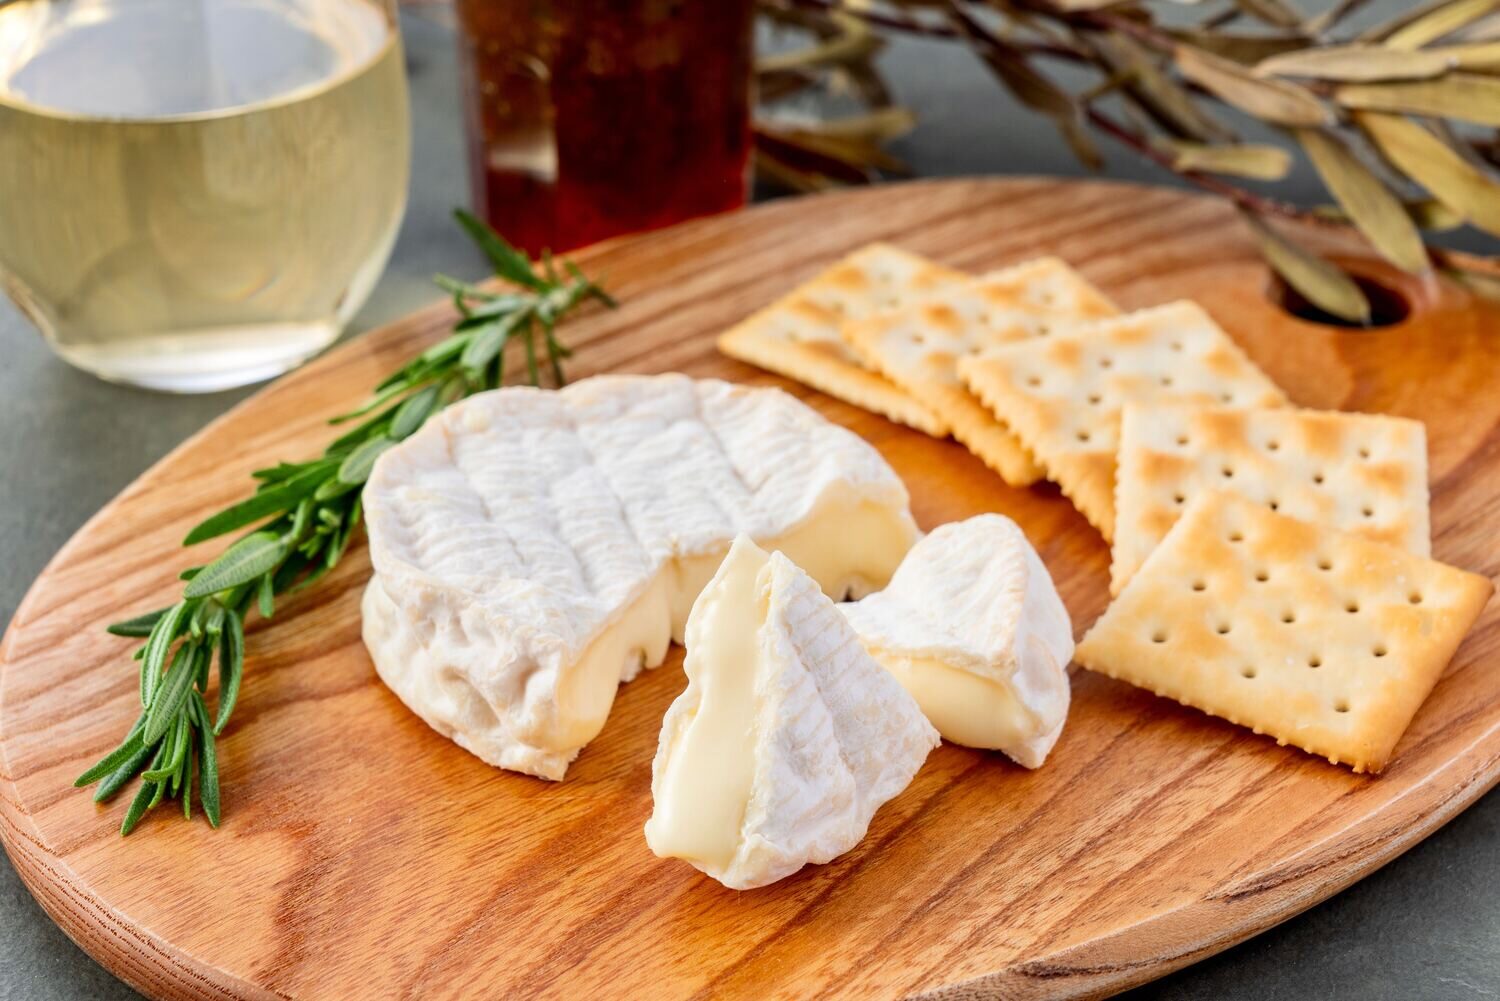 のぼりべつ酪農館の白カビタイプチーズ「A la louche（ア・ラ・ルーシュ）」